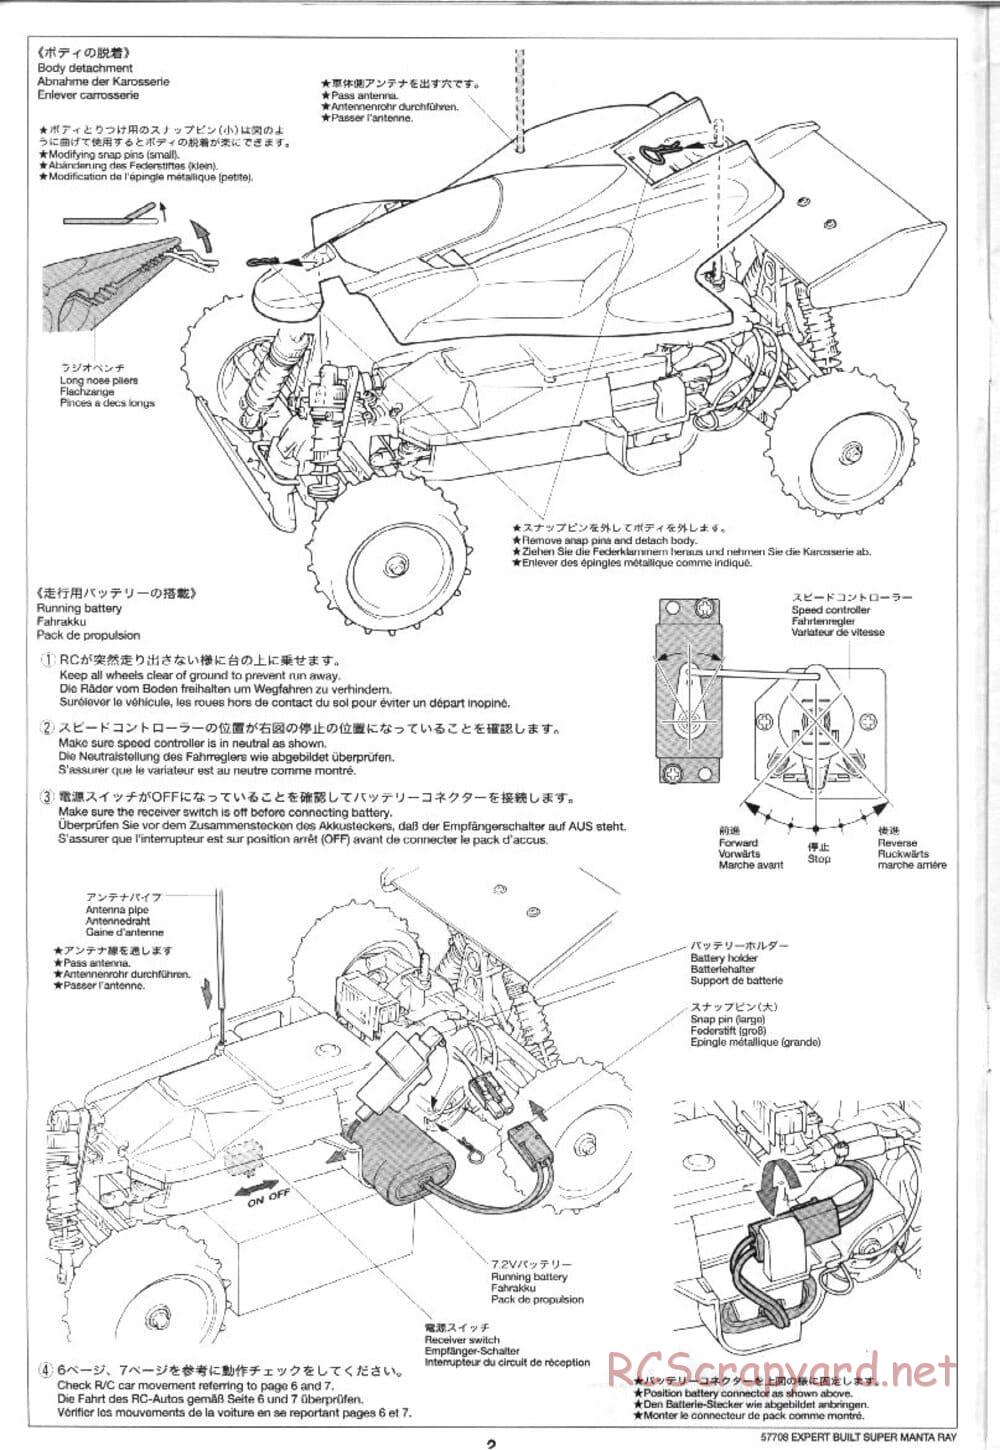 Tamiya - XB Super Manta Ray - DF-01 Chassis - Manual - Page 2